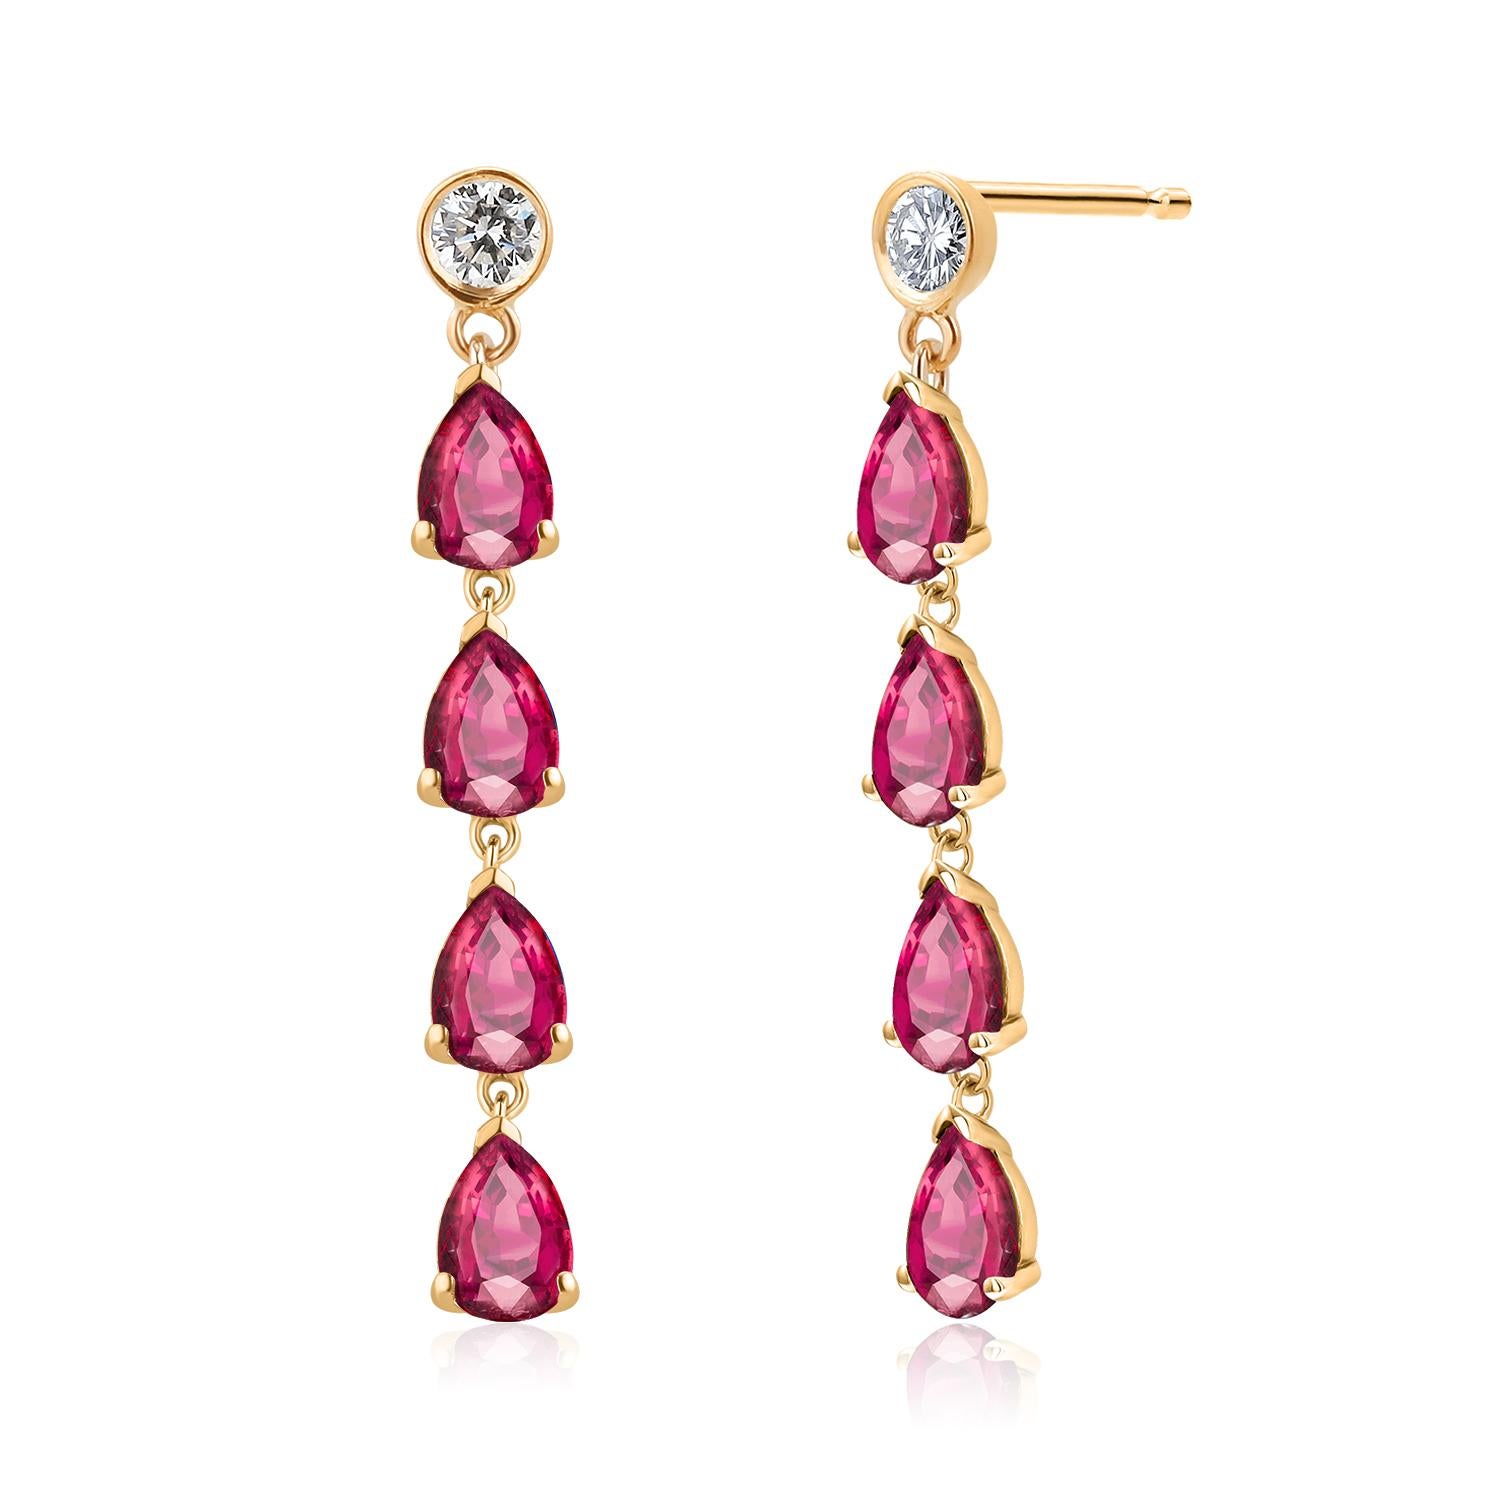 Ten Pear Burma Rubies Diamonds 3.20 Carat 1.55 Inch Long Yellow Gold Earrings  For Sale 2